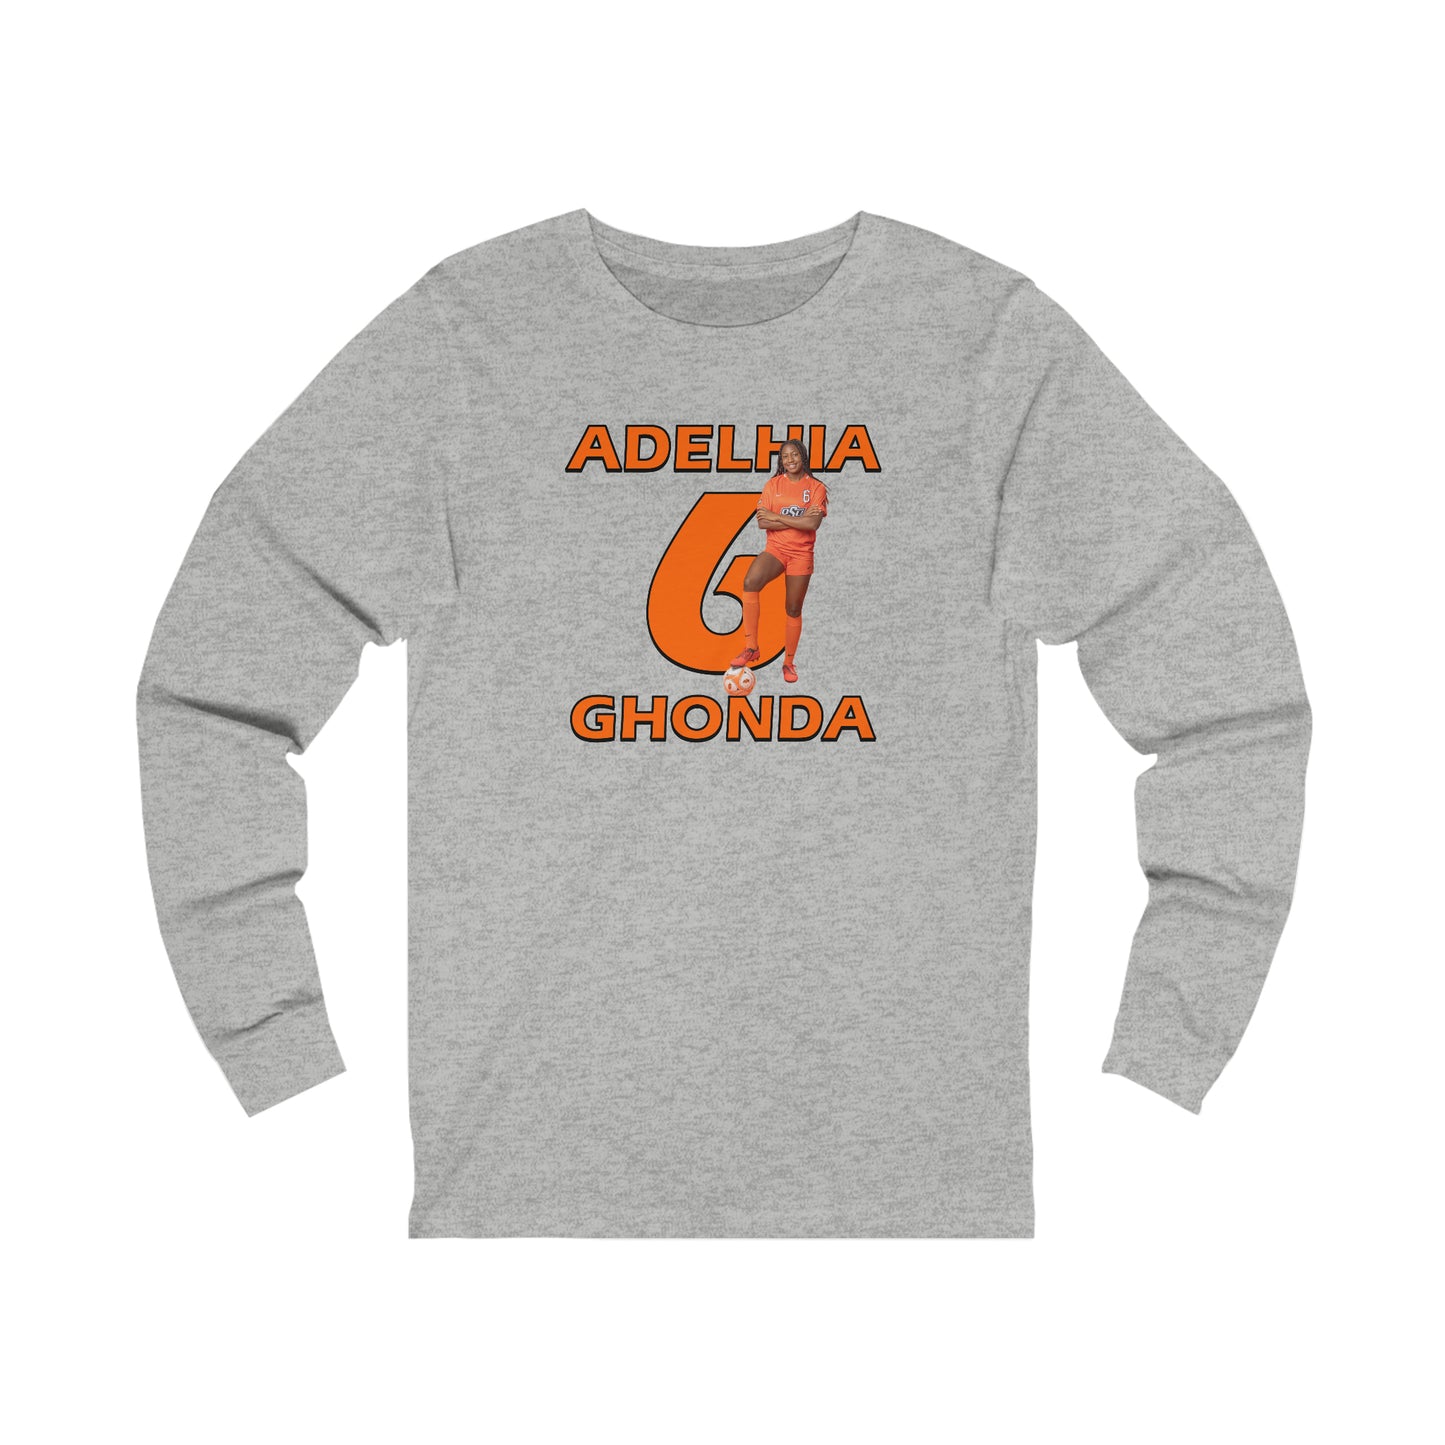 Adelhia Ghonda Long Sleeve T-Shirt